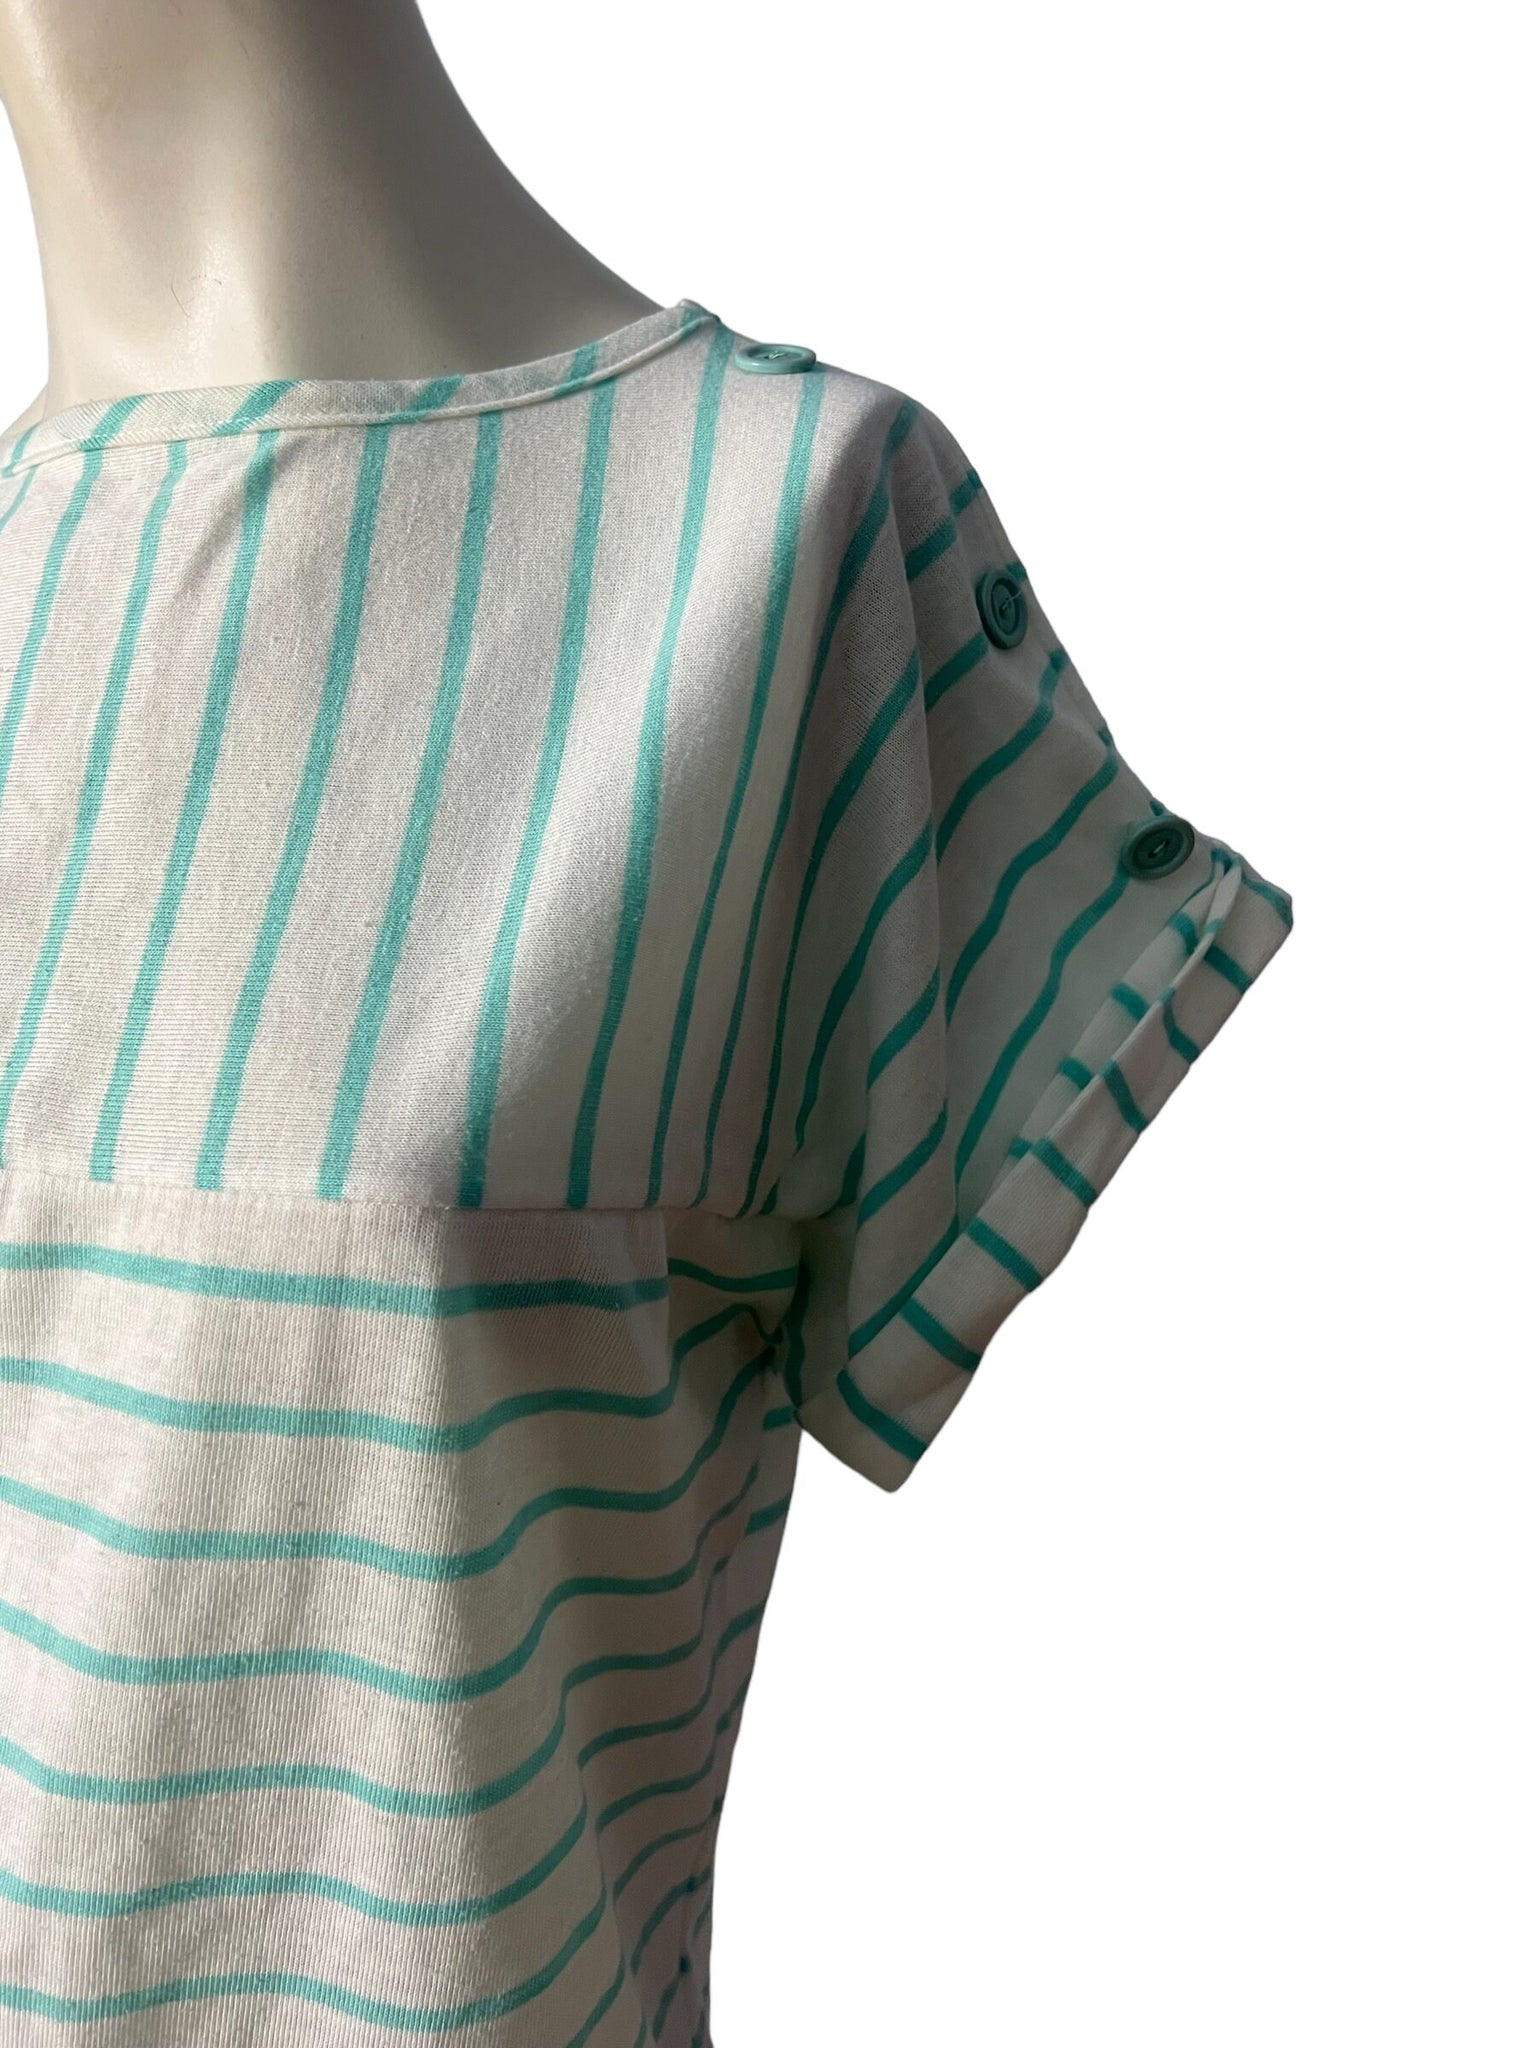 Vintage 80’s striped top shirt, tag says Club M